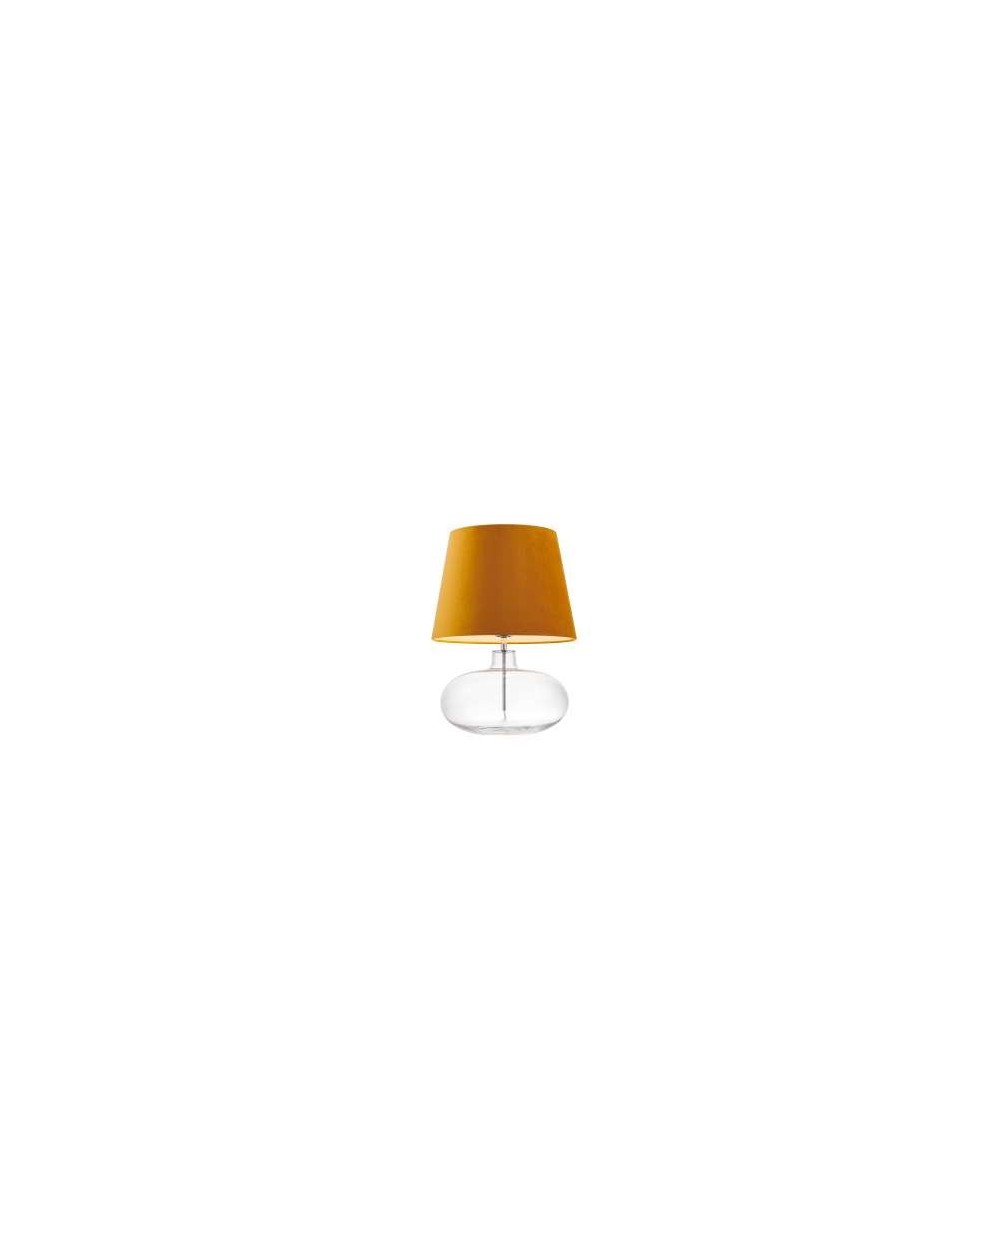 Sawa Velvet szklana lampa stołowa ze złotym welurowym abażurem i przeźroczystą szklaną podstawą - Kaspa